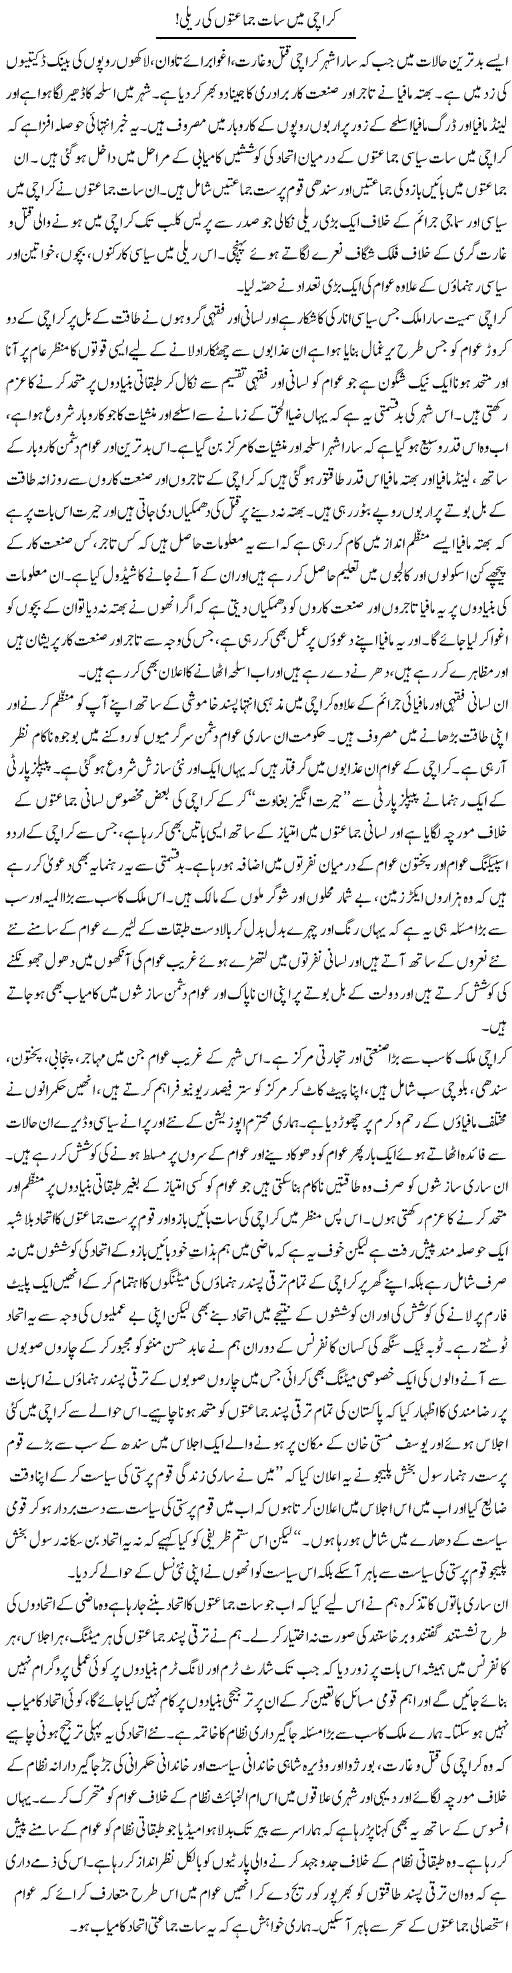 Karachi Politics Express Column Zaheer Akhtar 5 September 2011